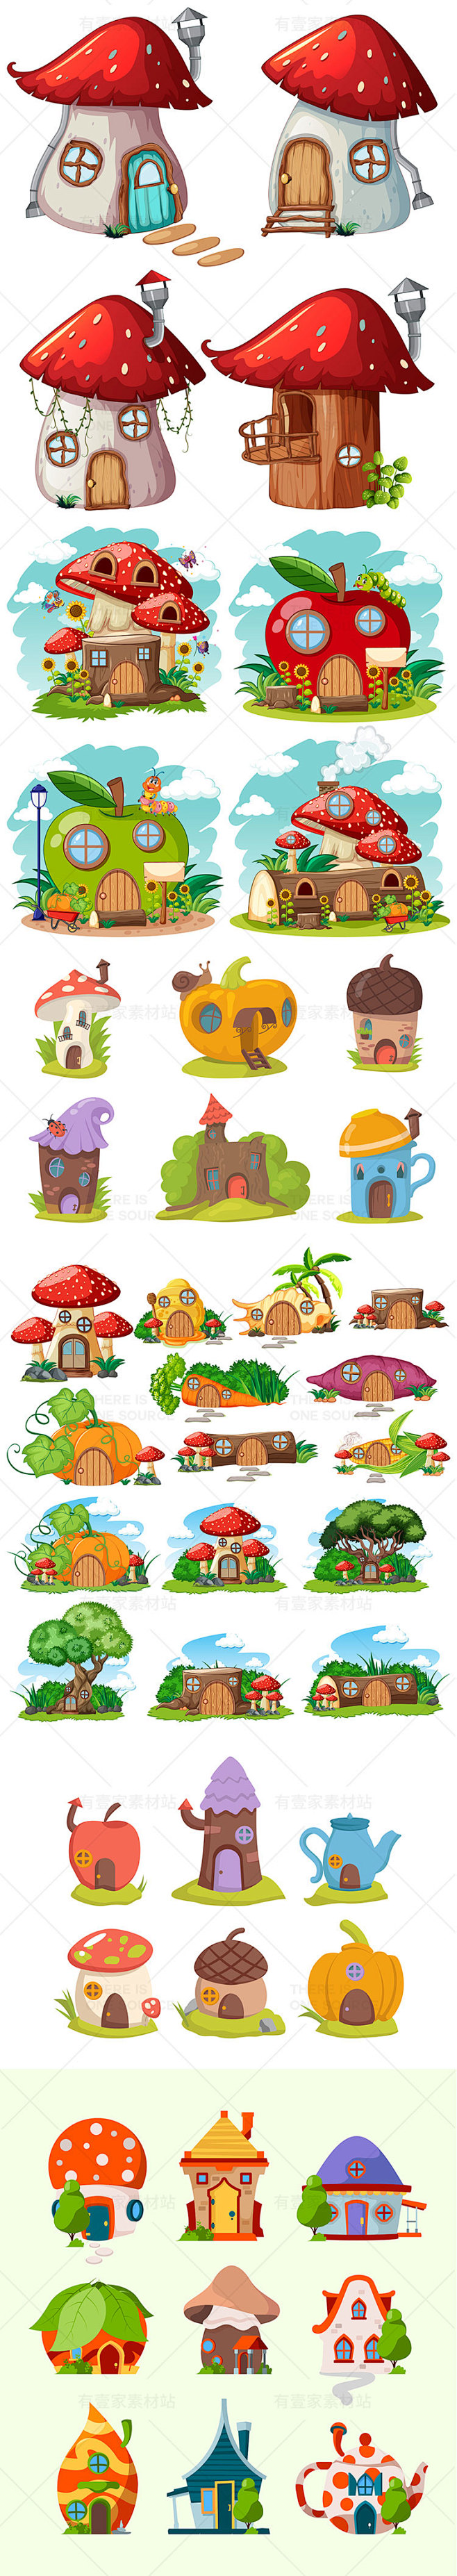 卡通儿童梦幻童话蘑菇水果蔬菜房子建筑房屋...